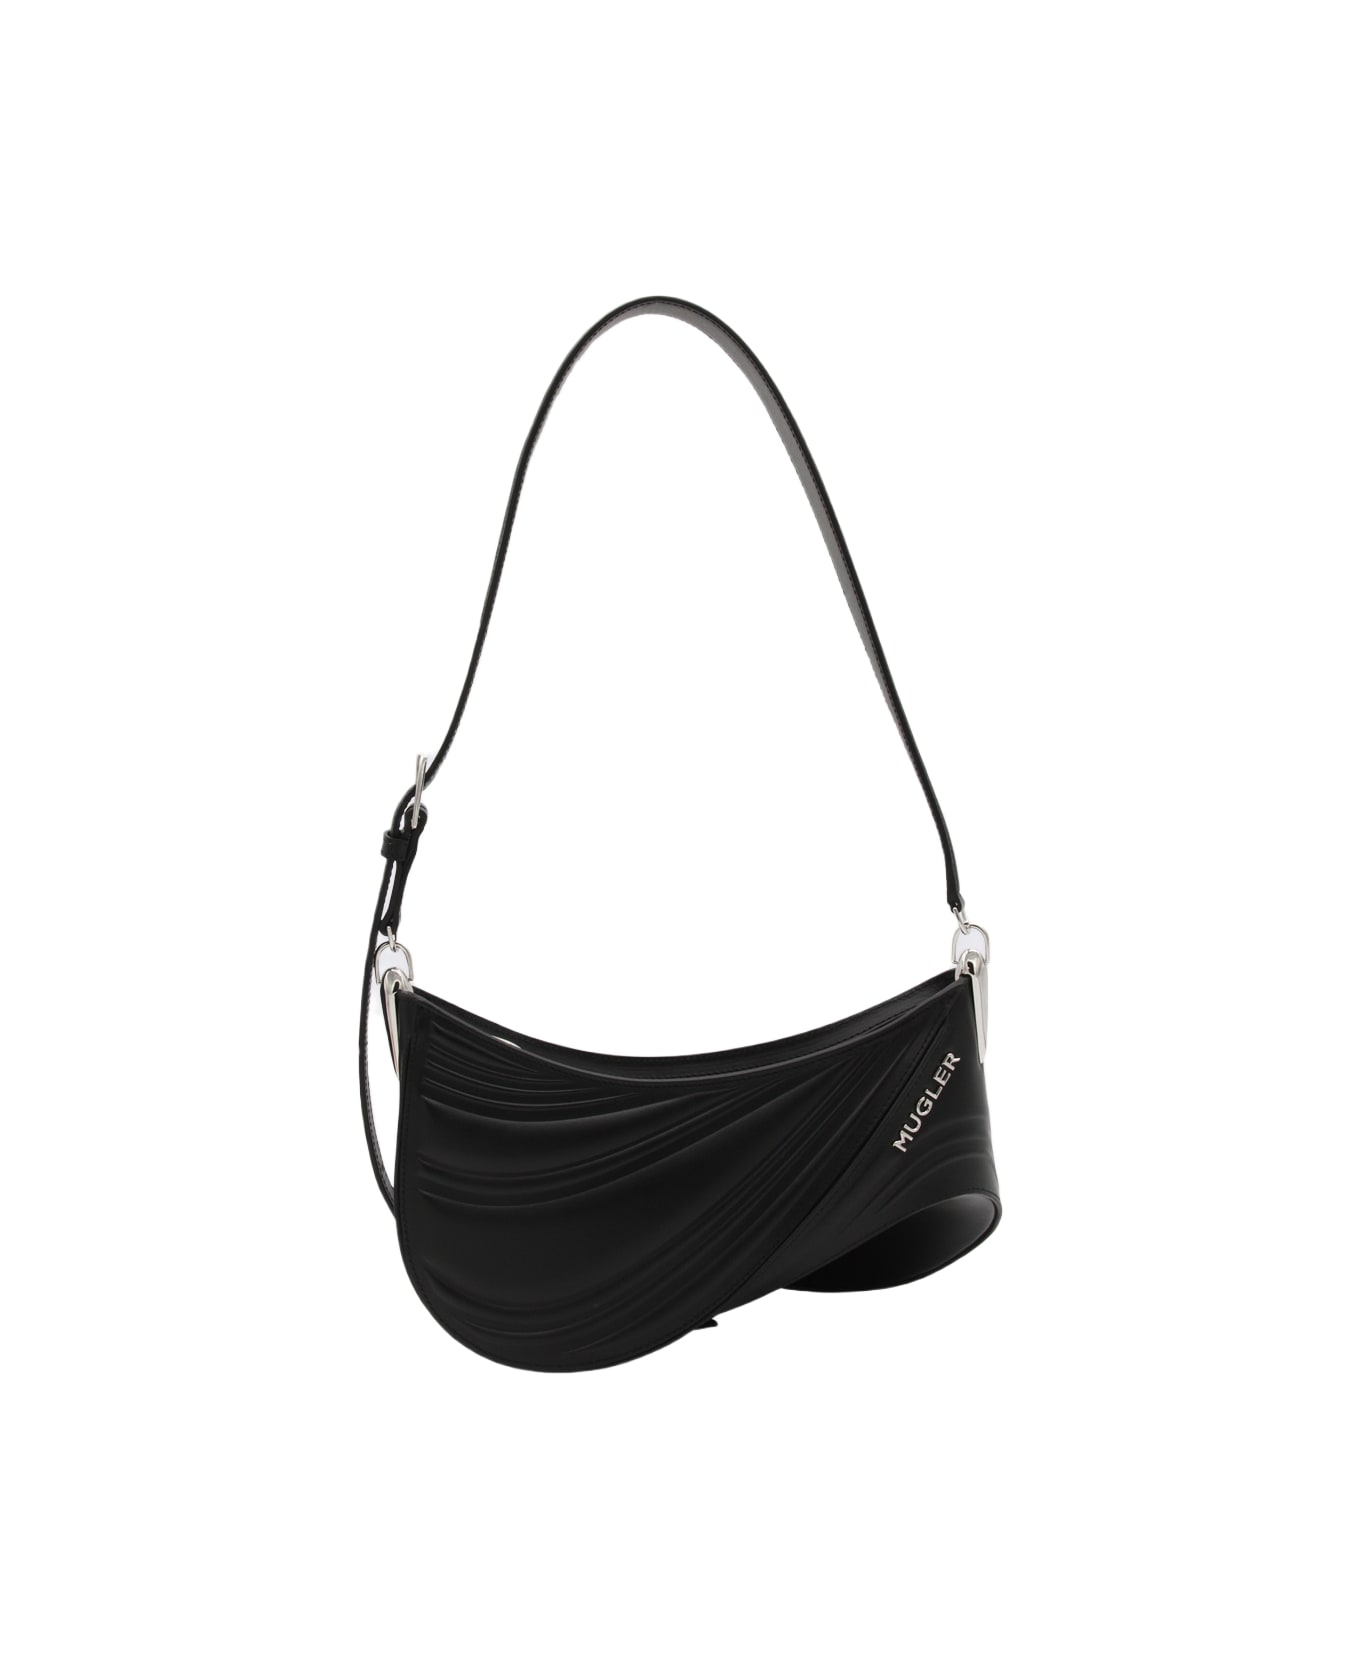 Mugler Blacke Leather Curve Shoulder Bag - Black